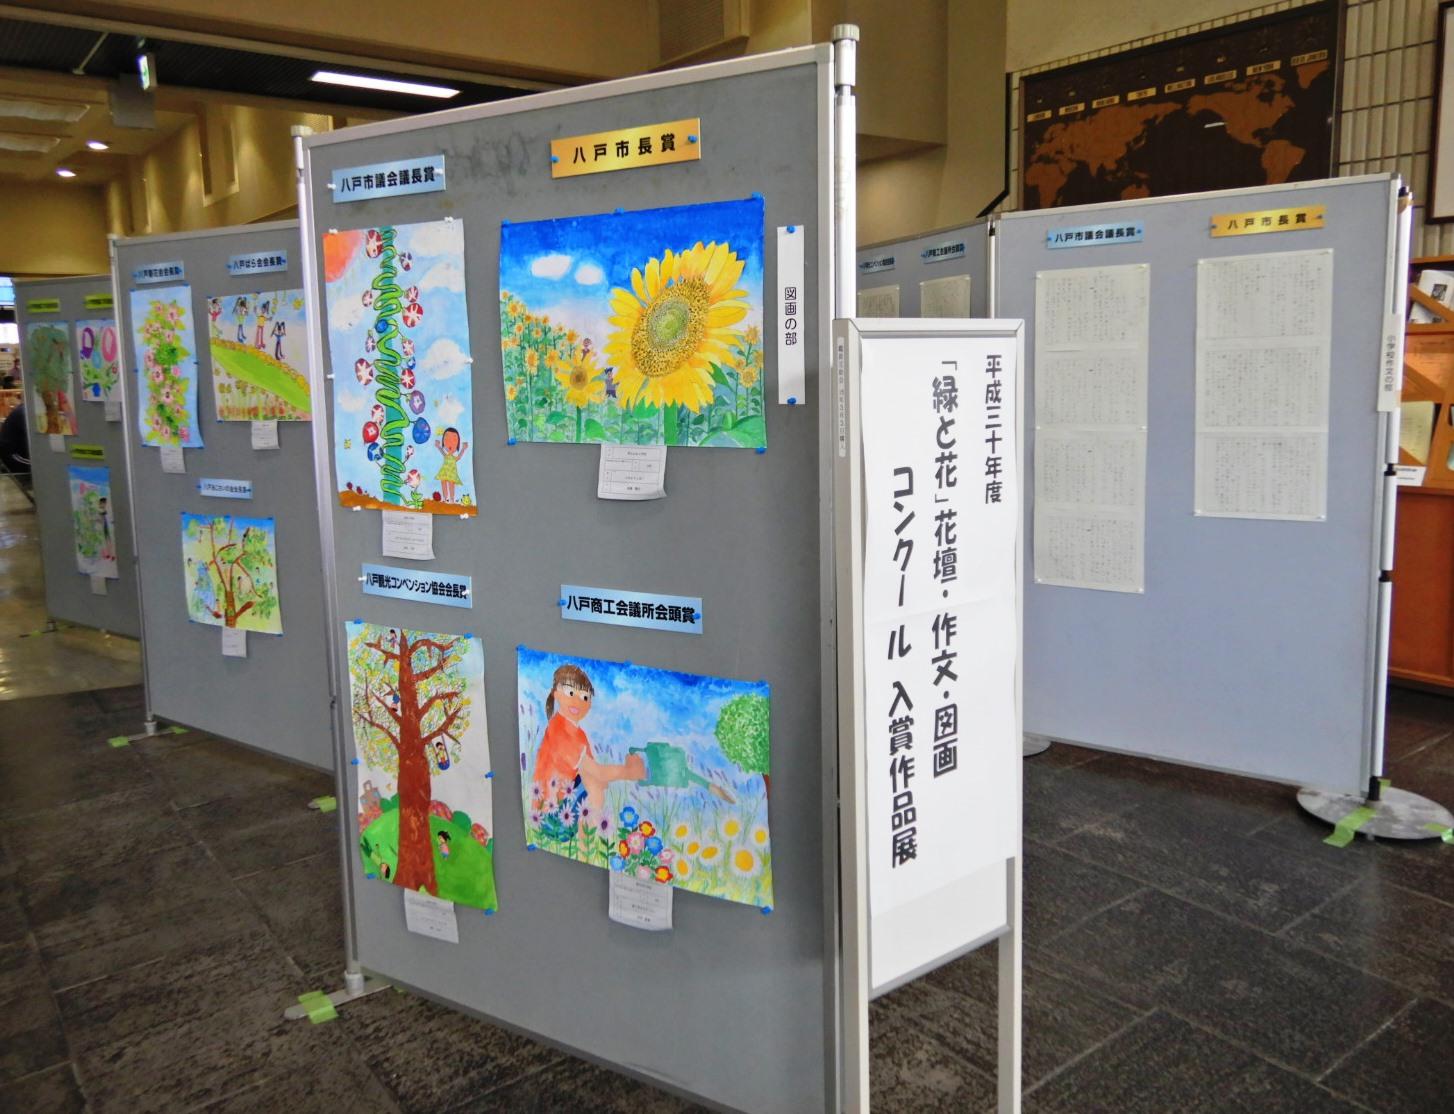 平成29年度「緑と花」花壇・作文・図画コンクール入賞作品展の看板が立てられた会場のパネルにずらりと掲示されている入賞作品の写真